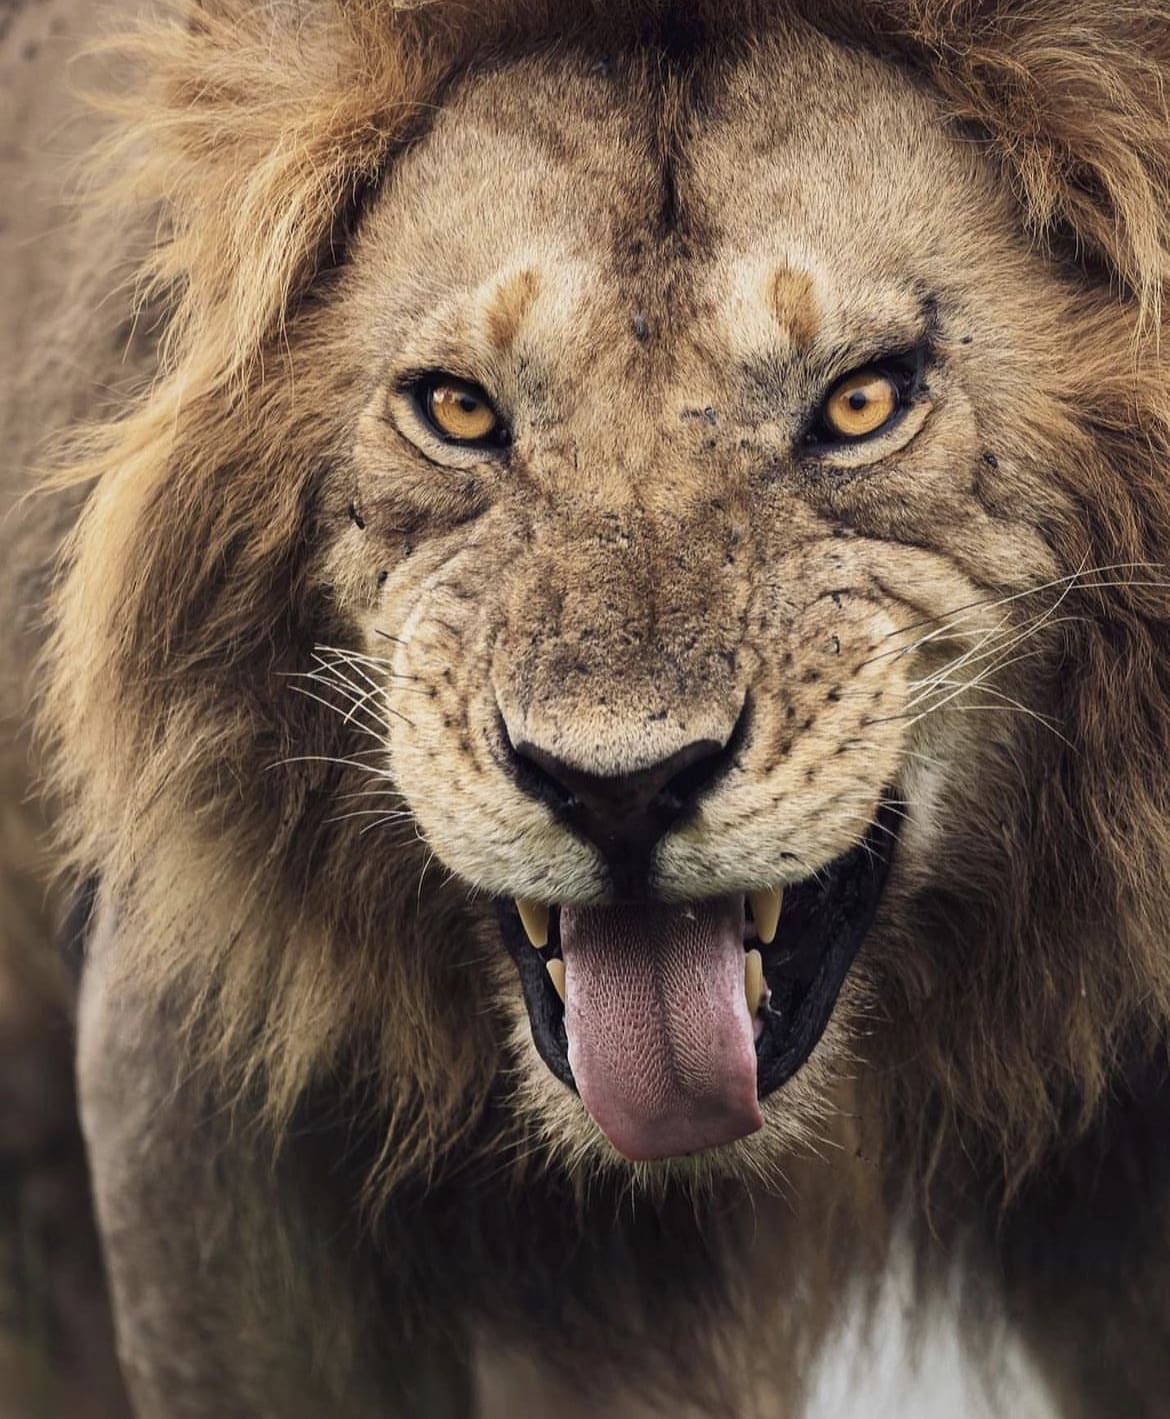 A male lion 'tasting' the air through the Flehmen response